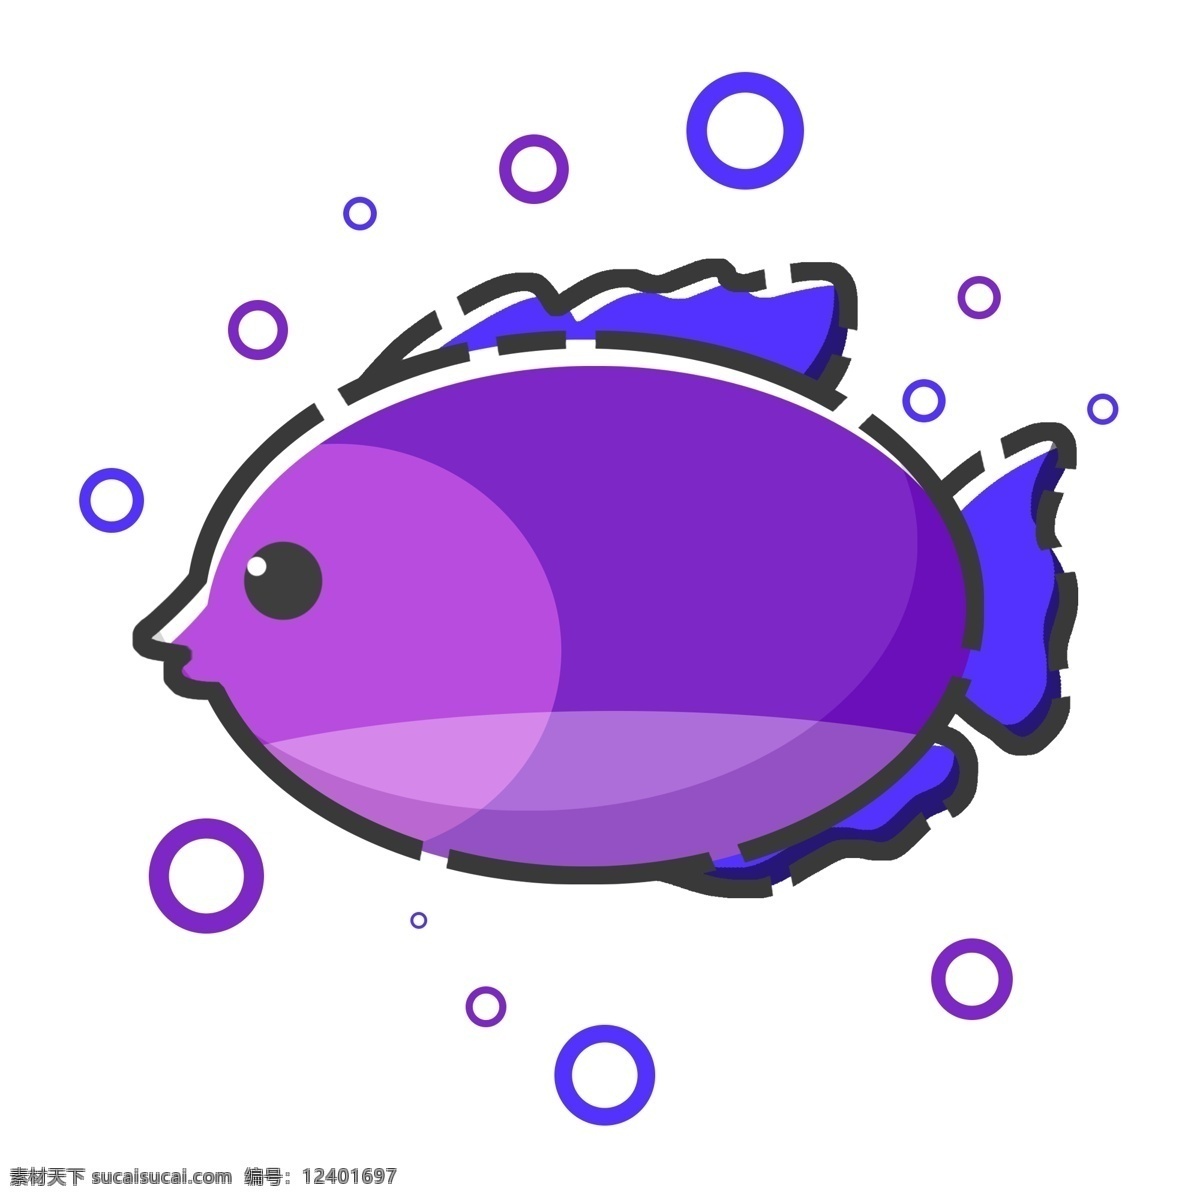 一条紫色鱼儿 鱼 一条鱼 紫色鱼